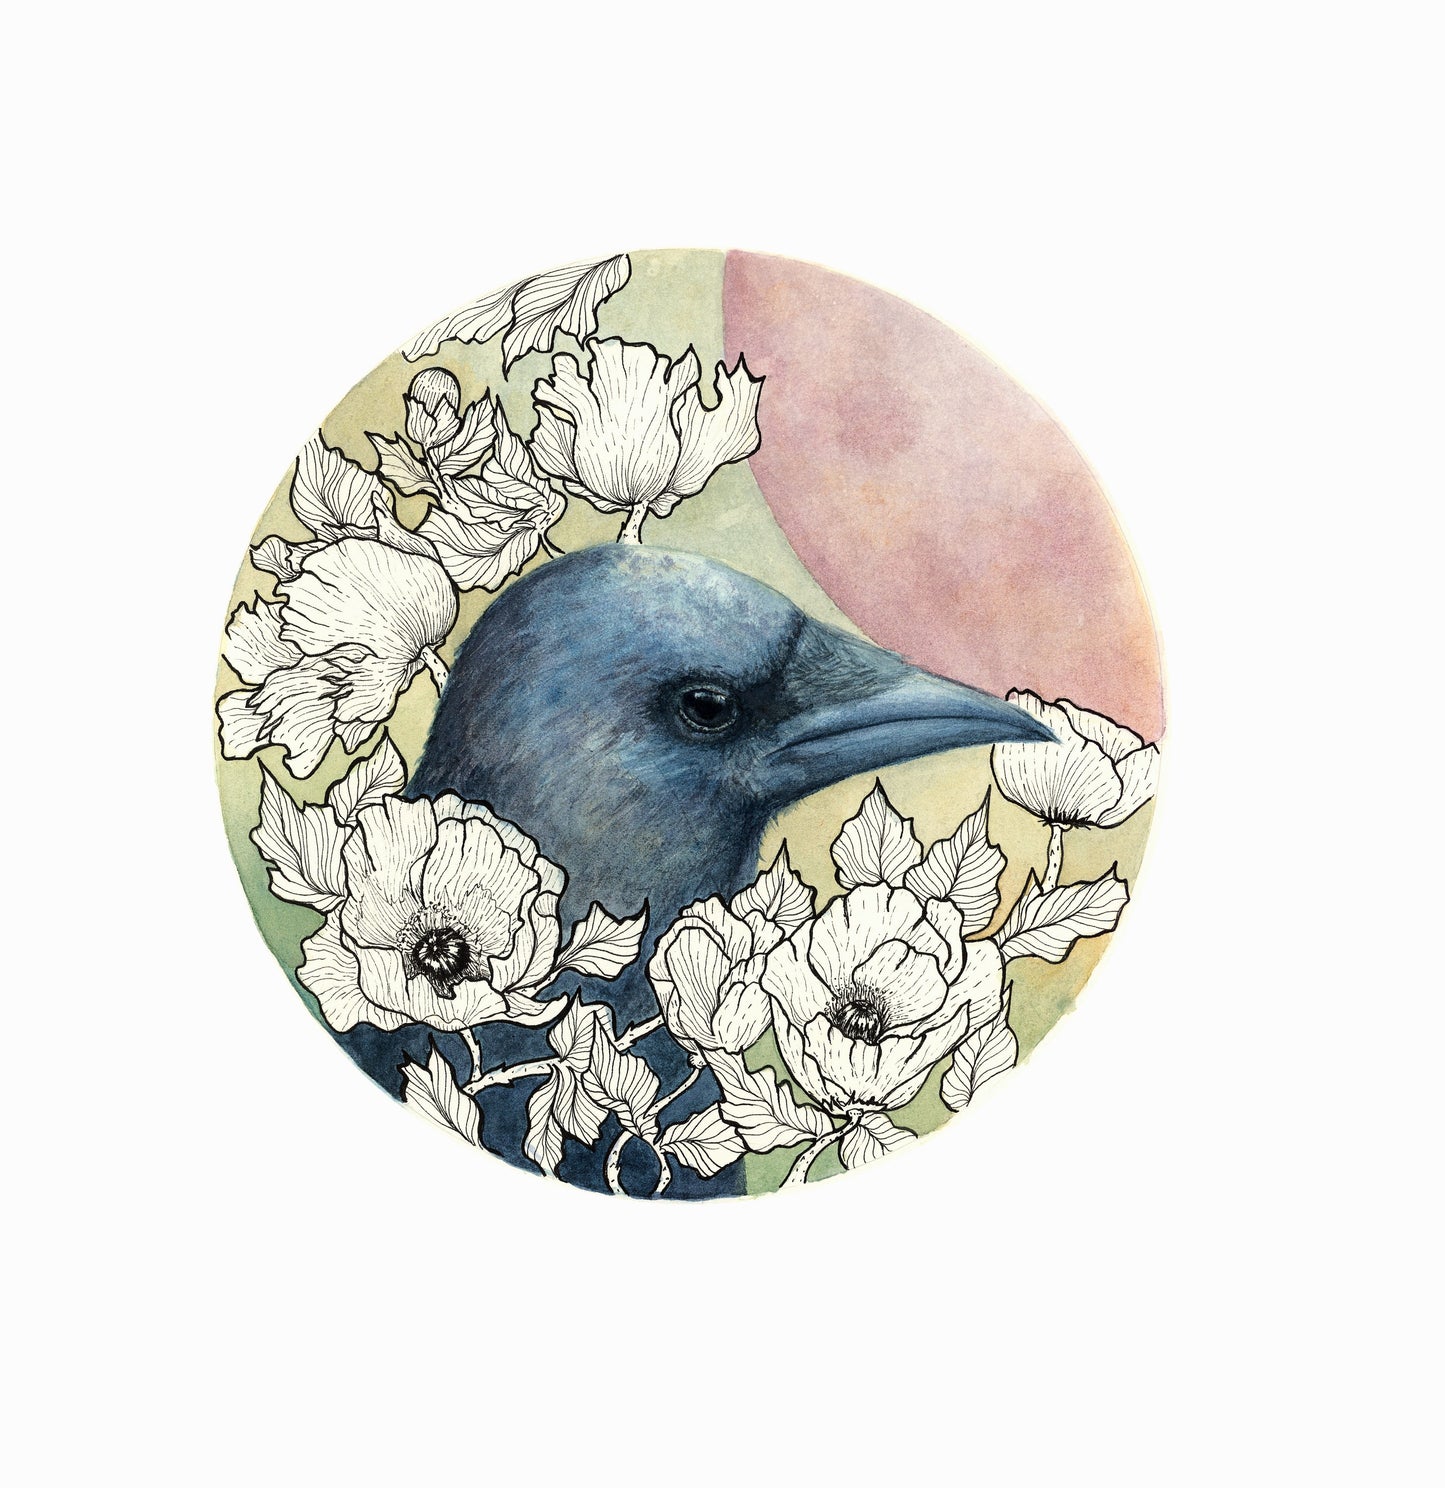 Raven and Moon Print